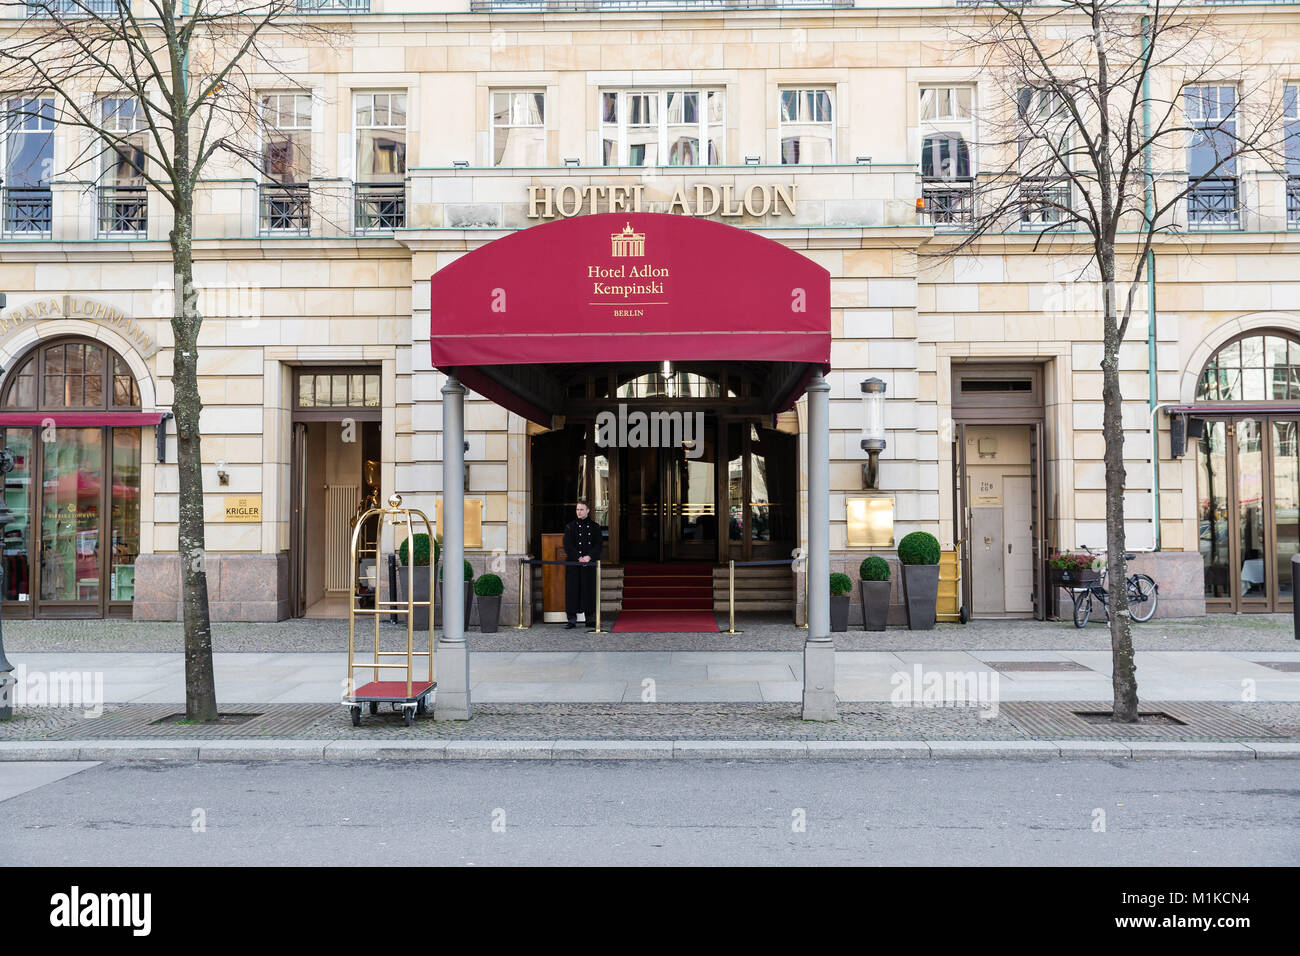 Main entrance to Hotel Adlon Kempinski, Berlin, Germany Stock Photo